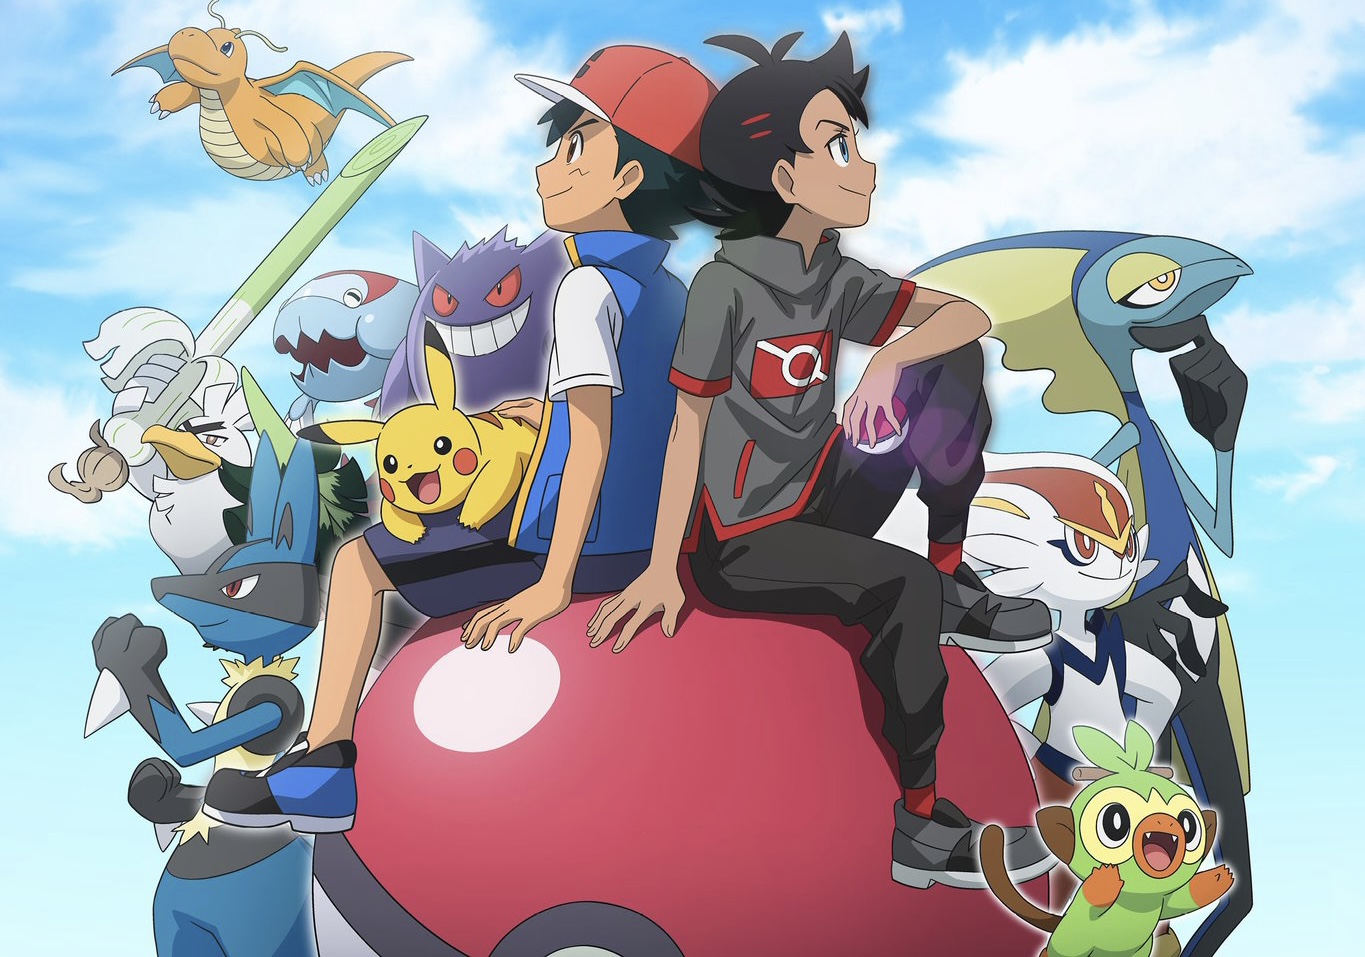 La nueva serie de Pokémon llegará a todo el mundo gracias a Netflix